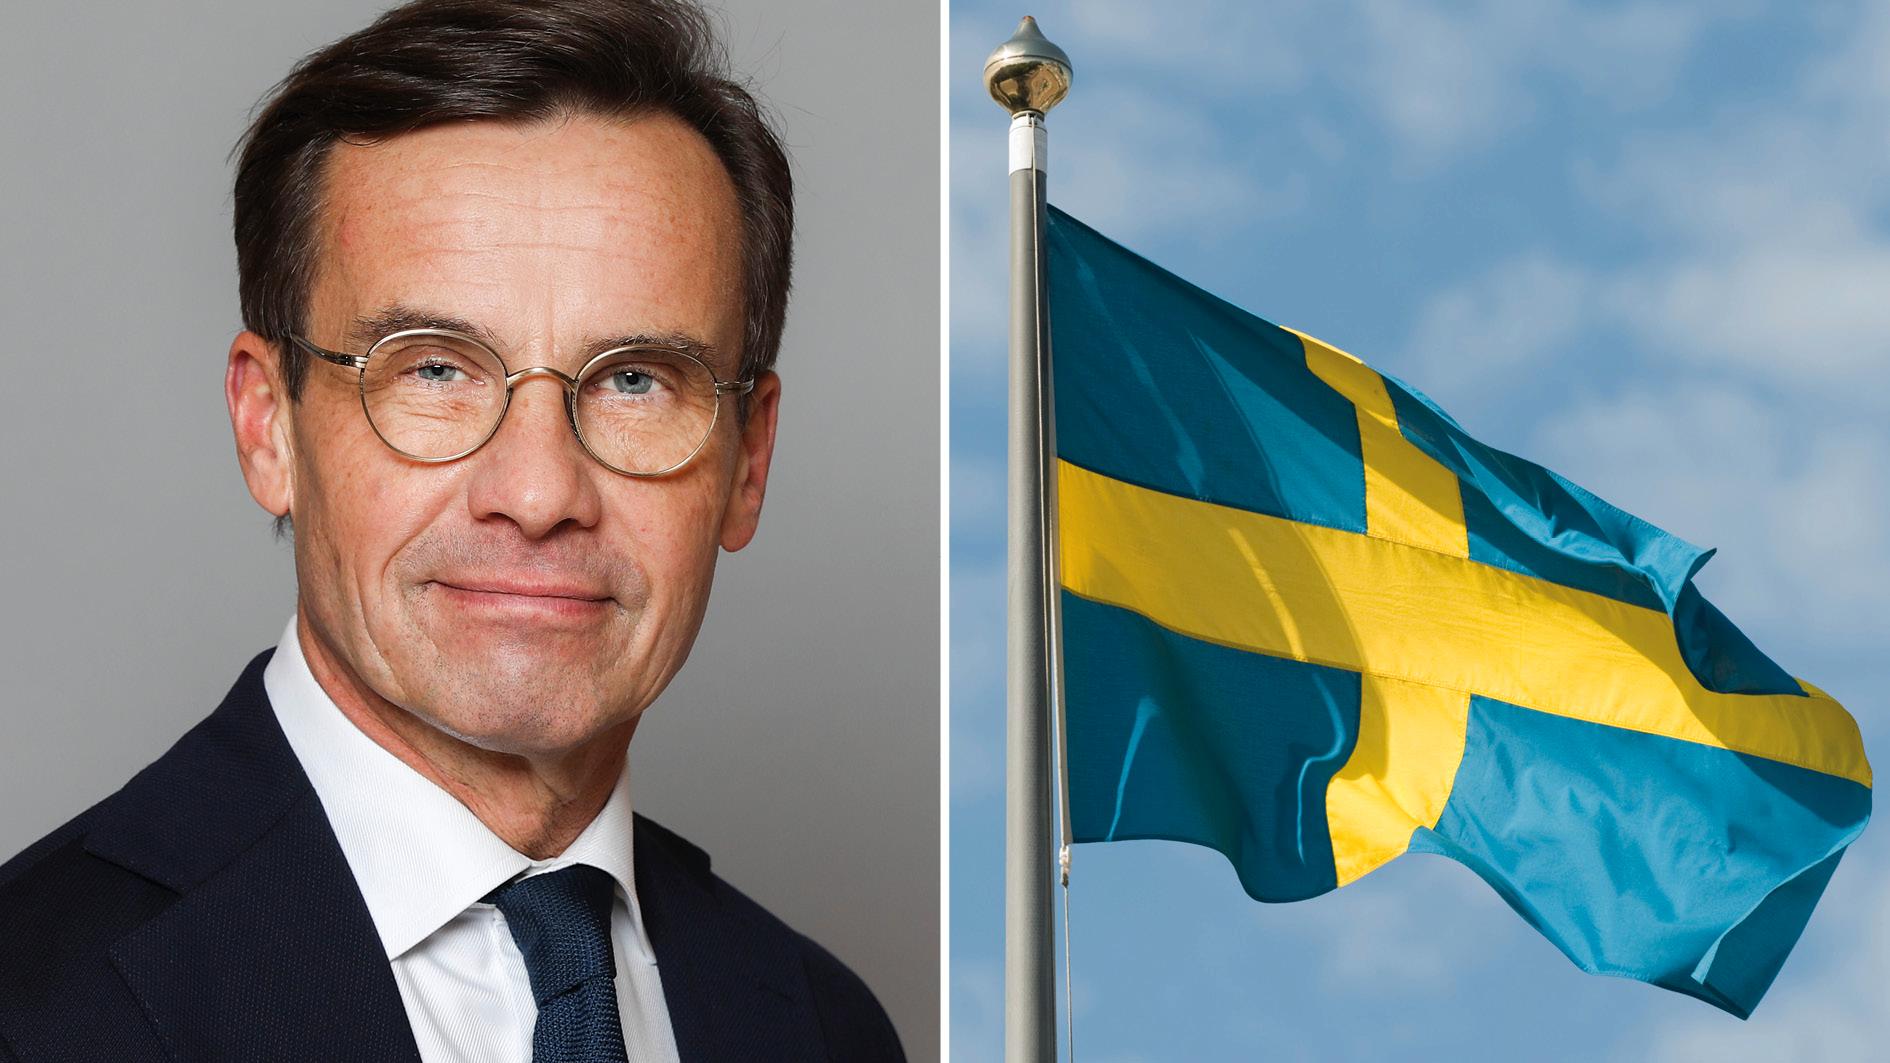 Det är hög tid för oss att bygga ihop Sverige och överbrygga utanförskapet. Då krävs tre saker: Ett uppvärderat svenskt medborgarskap. Fokus på svenska språket. Och respekt för de gemensamma värderingar som har byggt Sverige starkt, skriver statsminister Ulf Kristersson.